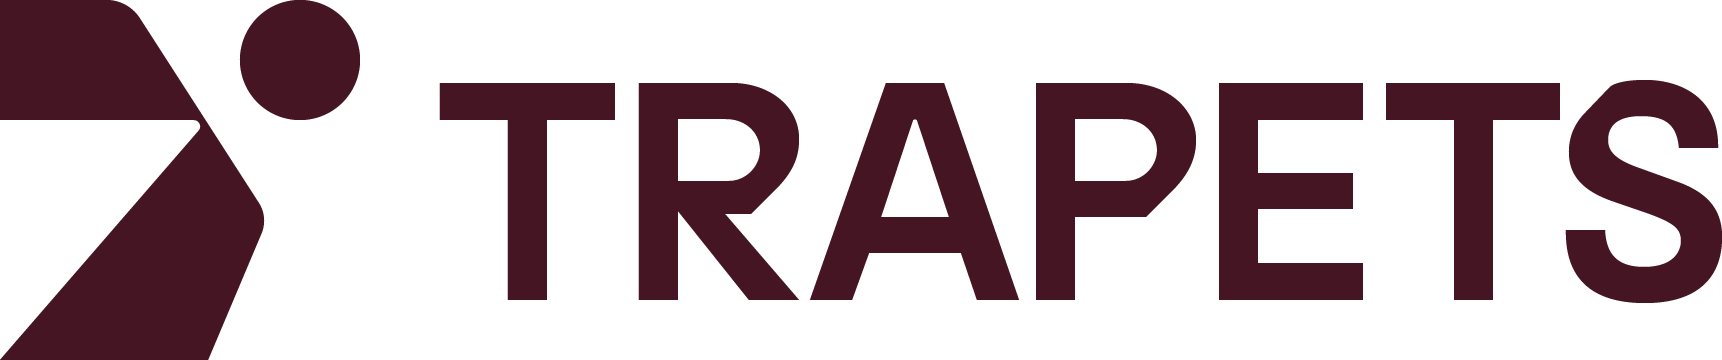 Trapets Logo Burgundy